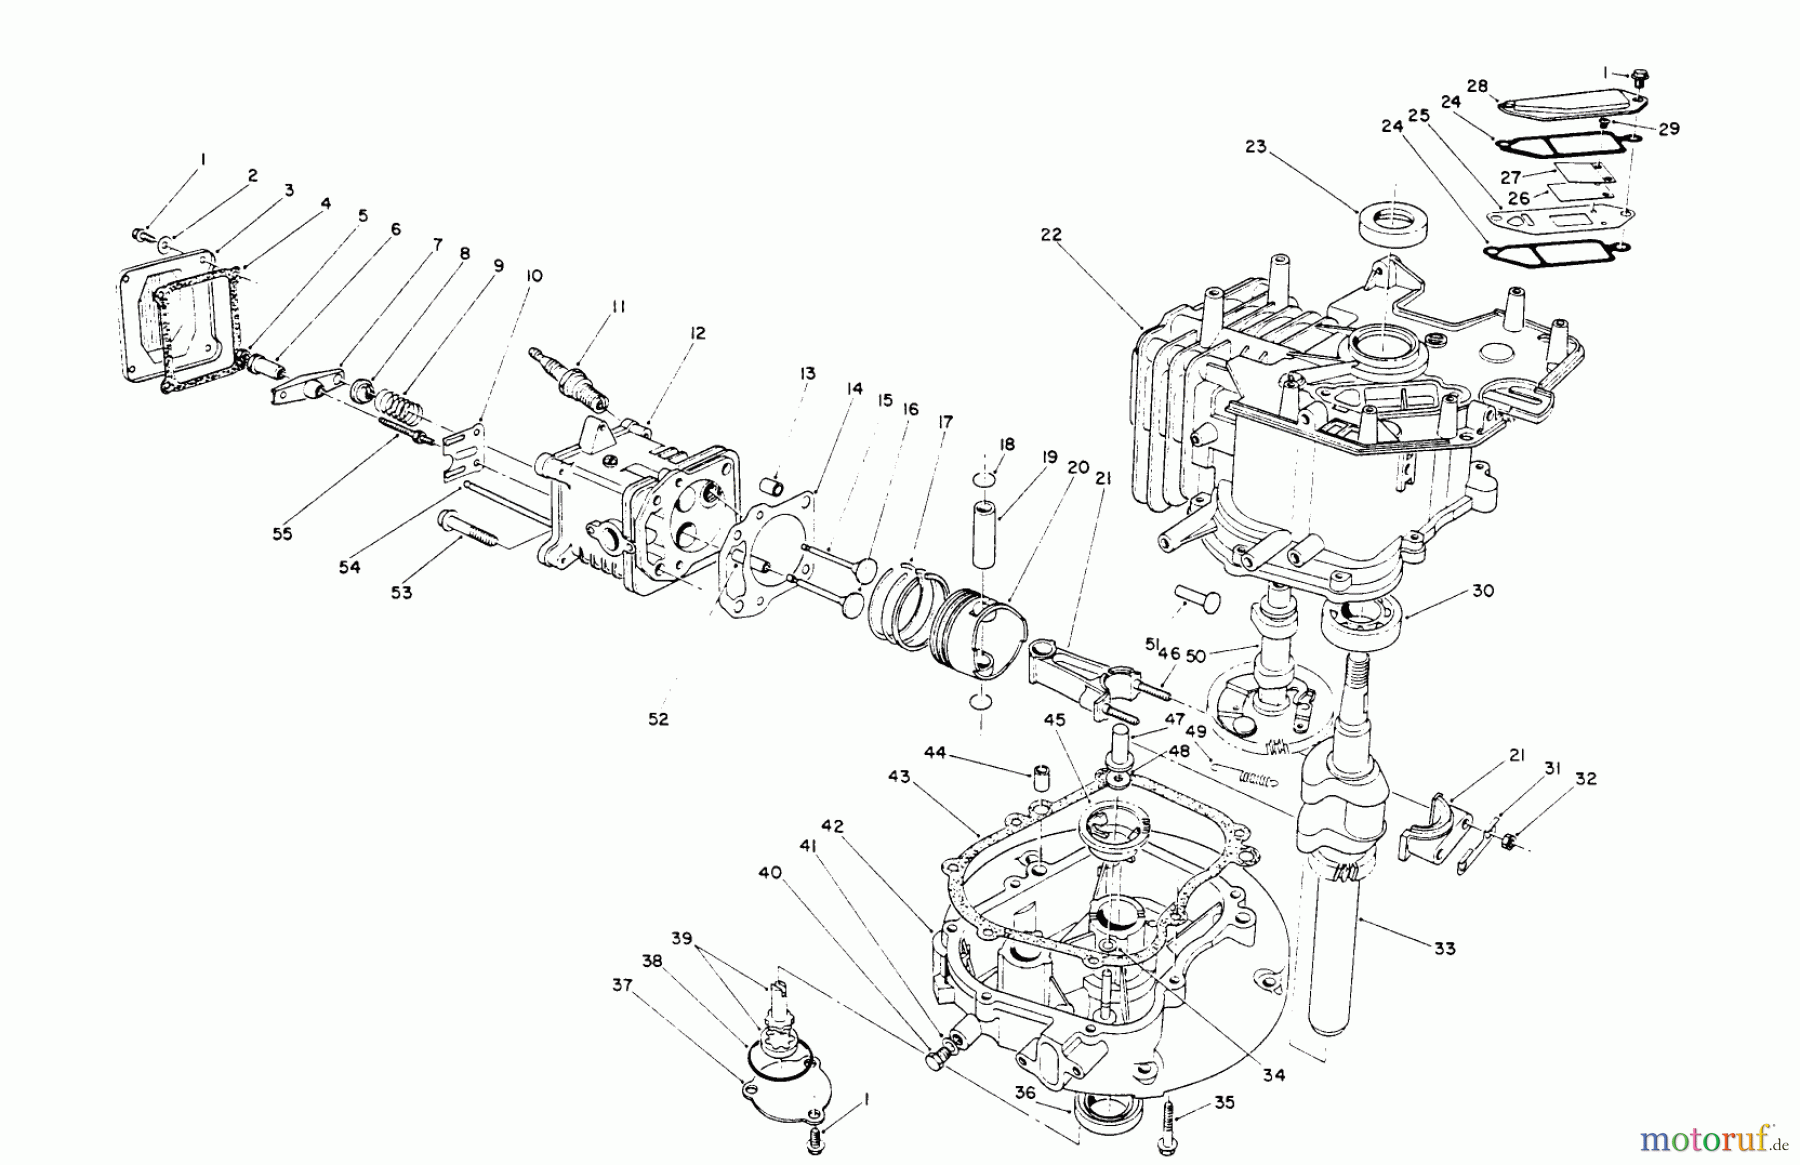  Toro Neu Mowers, Walk-Behind Seite 2 26625B - Toro Lawnmower, 1990 (0000001-0999999) CRANKCASE ASSEMBLY (ENGINE NO. VMK9)